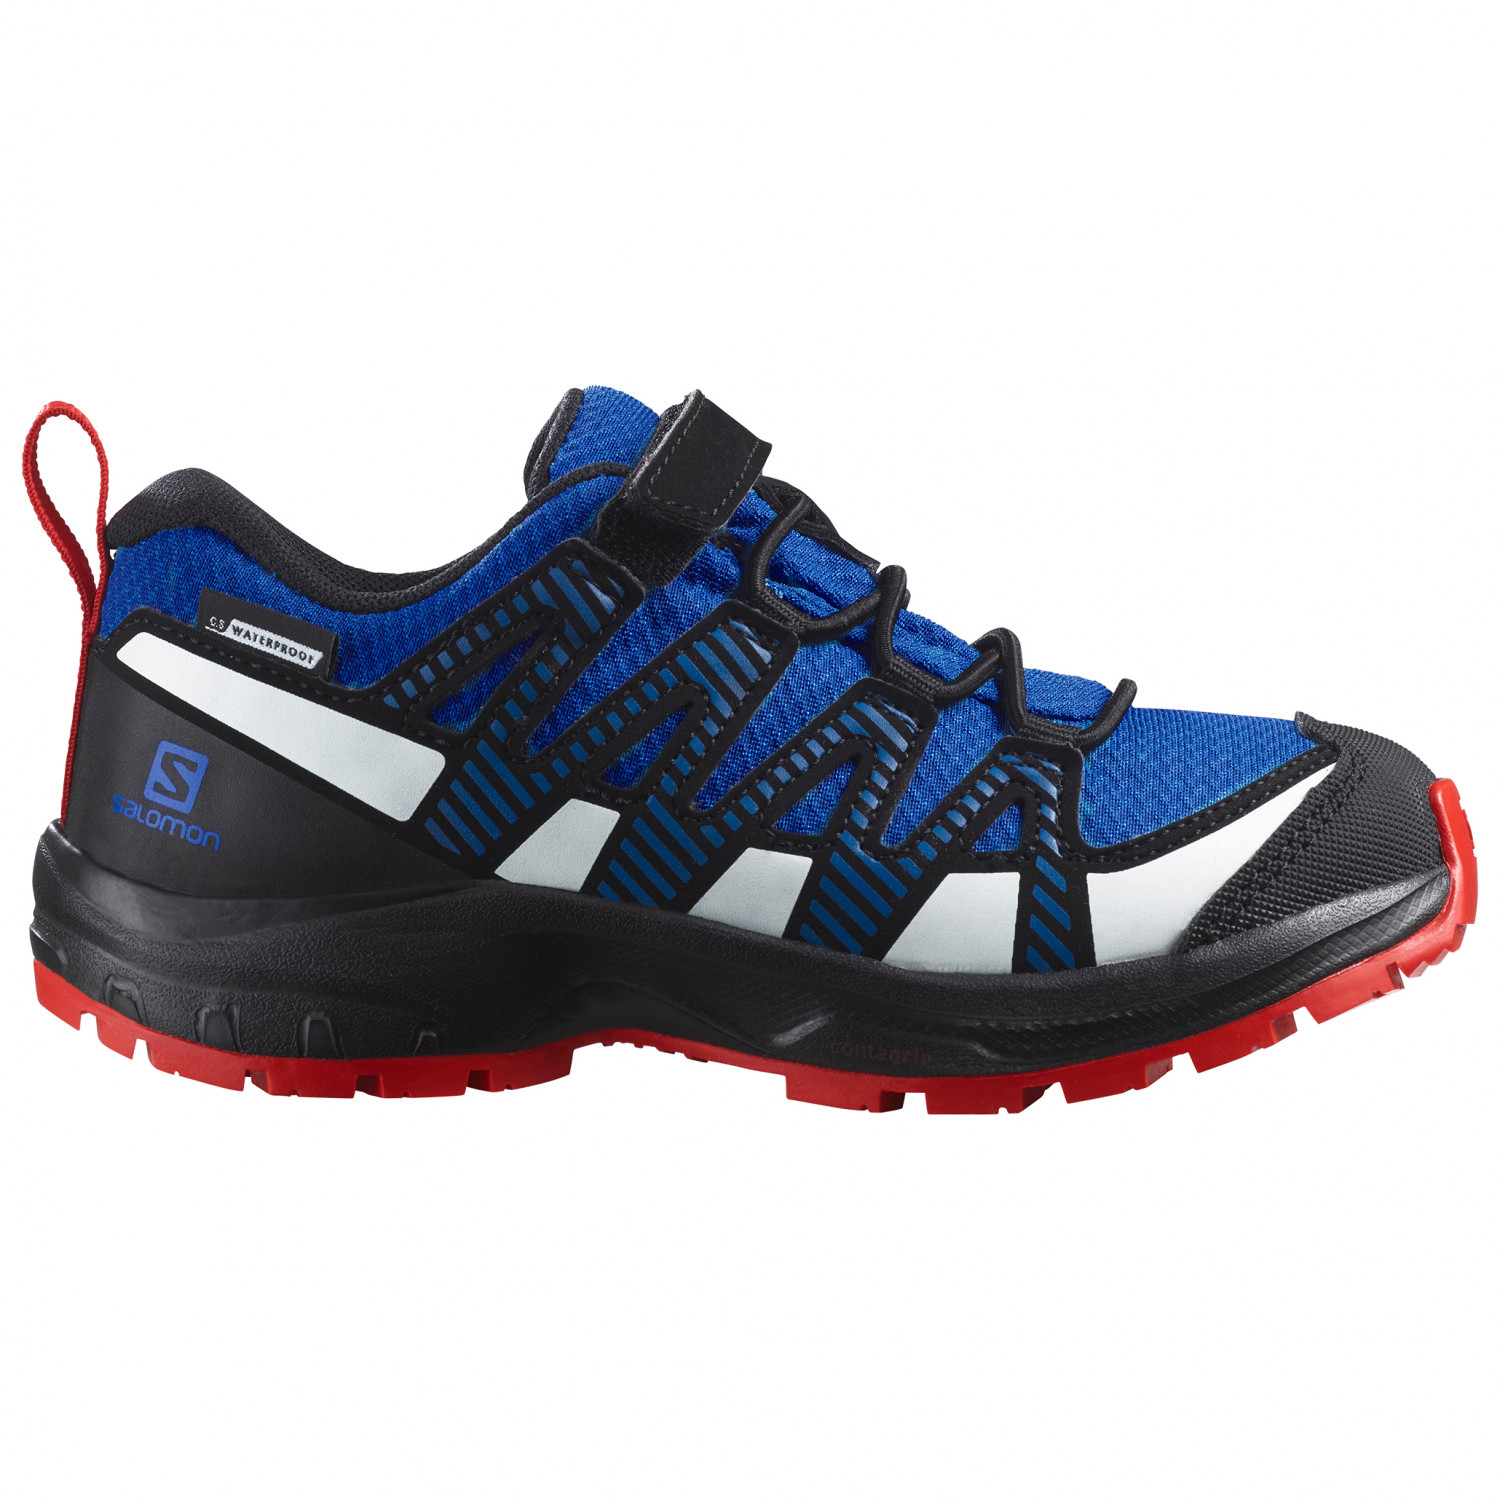 Кроссовки для бега по пересеченной местности Salomon Kid's XA Pro V8 CSWP, цвет Lapis Blue/Black/Fiery Red ботинки salomon xa pro 3d v8 gtx nisk red safa uk 8 5